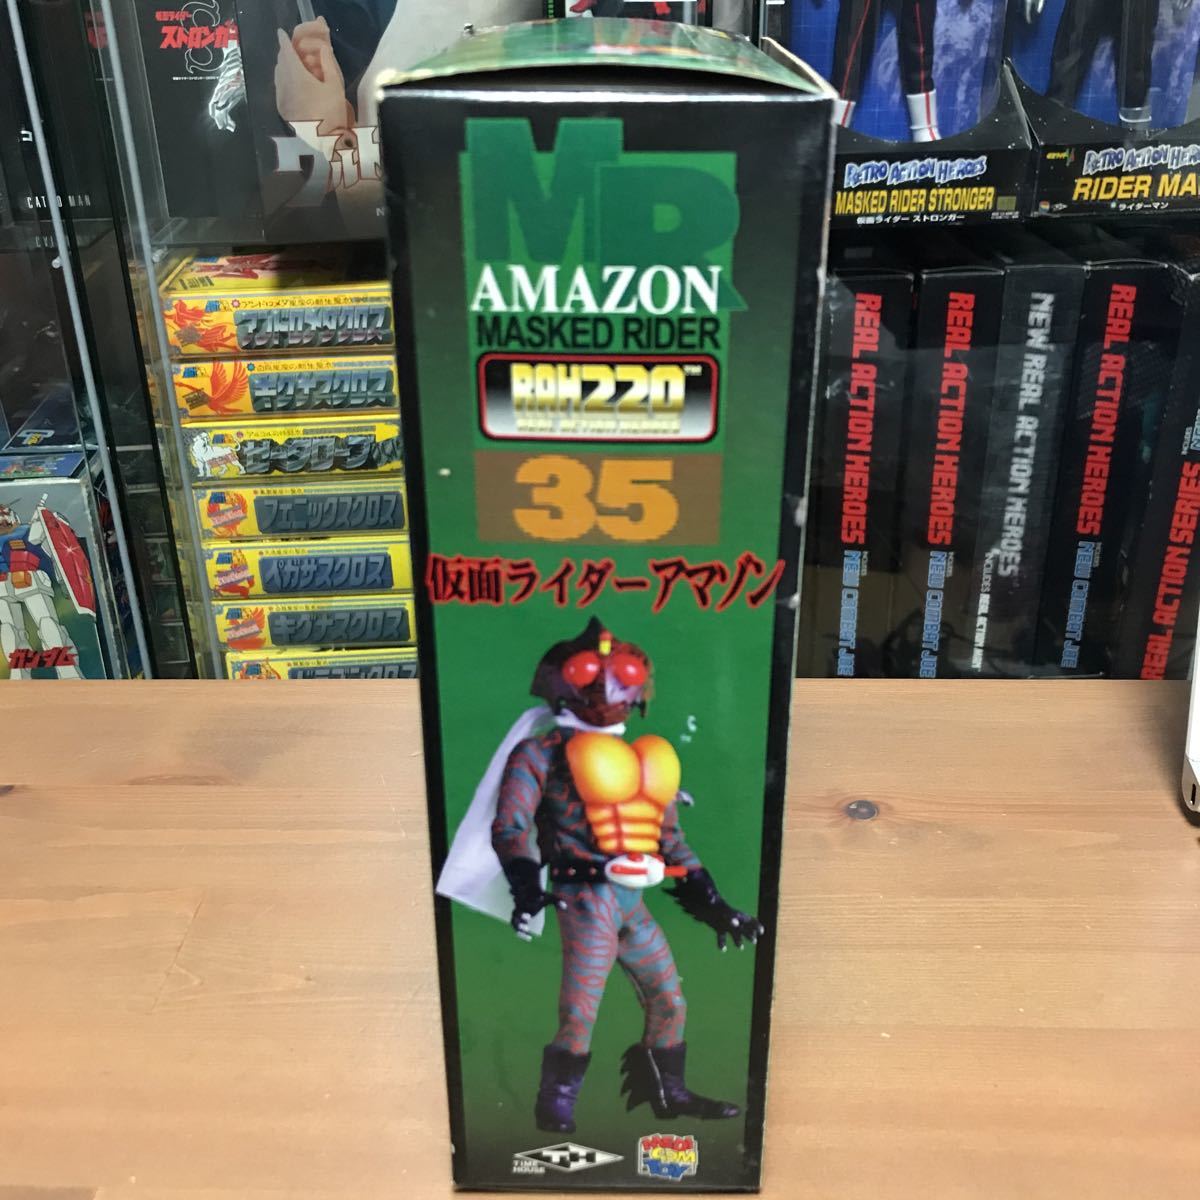 ngoo[ нераспечатанный ]meti com игрушка RAH настоящий action герой z1/8 шкала Kamen Rider Amazon 